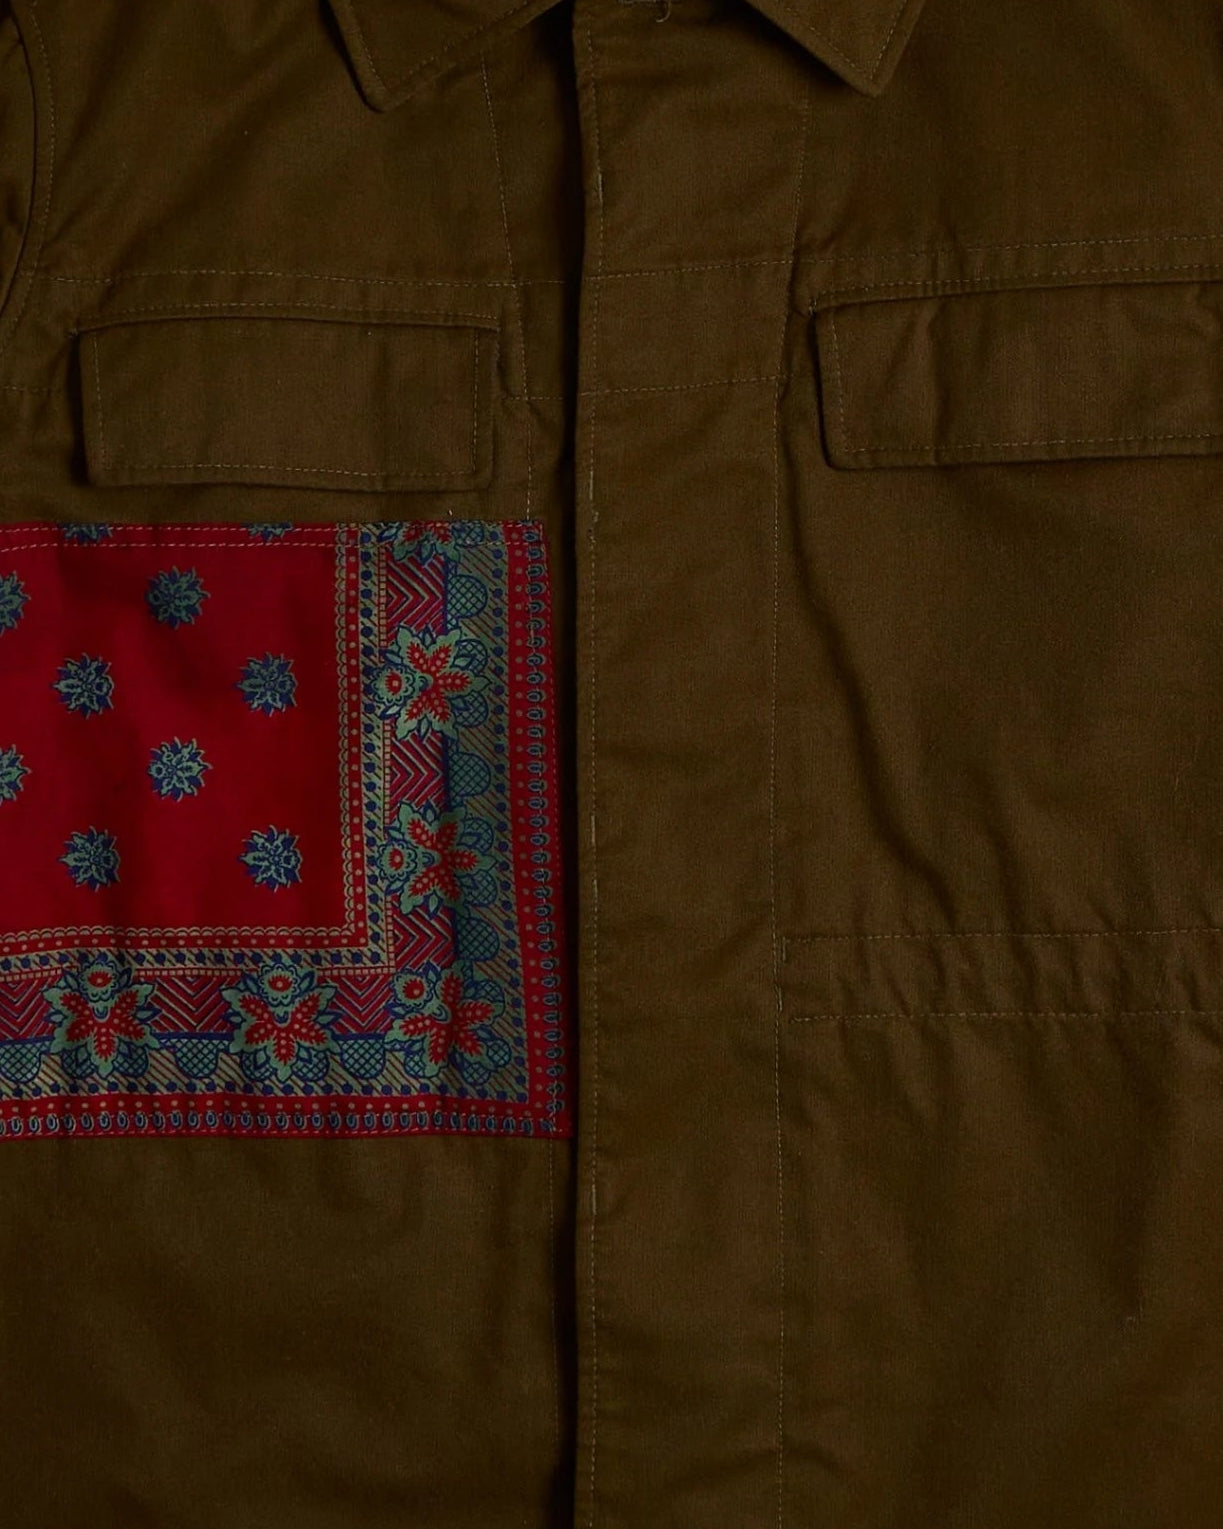 Vintage Staxism Jacket